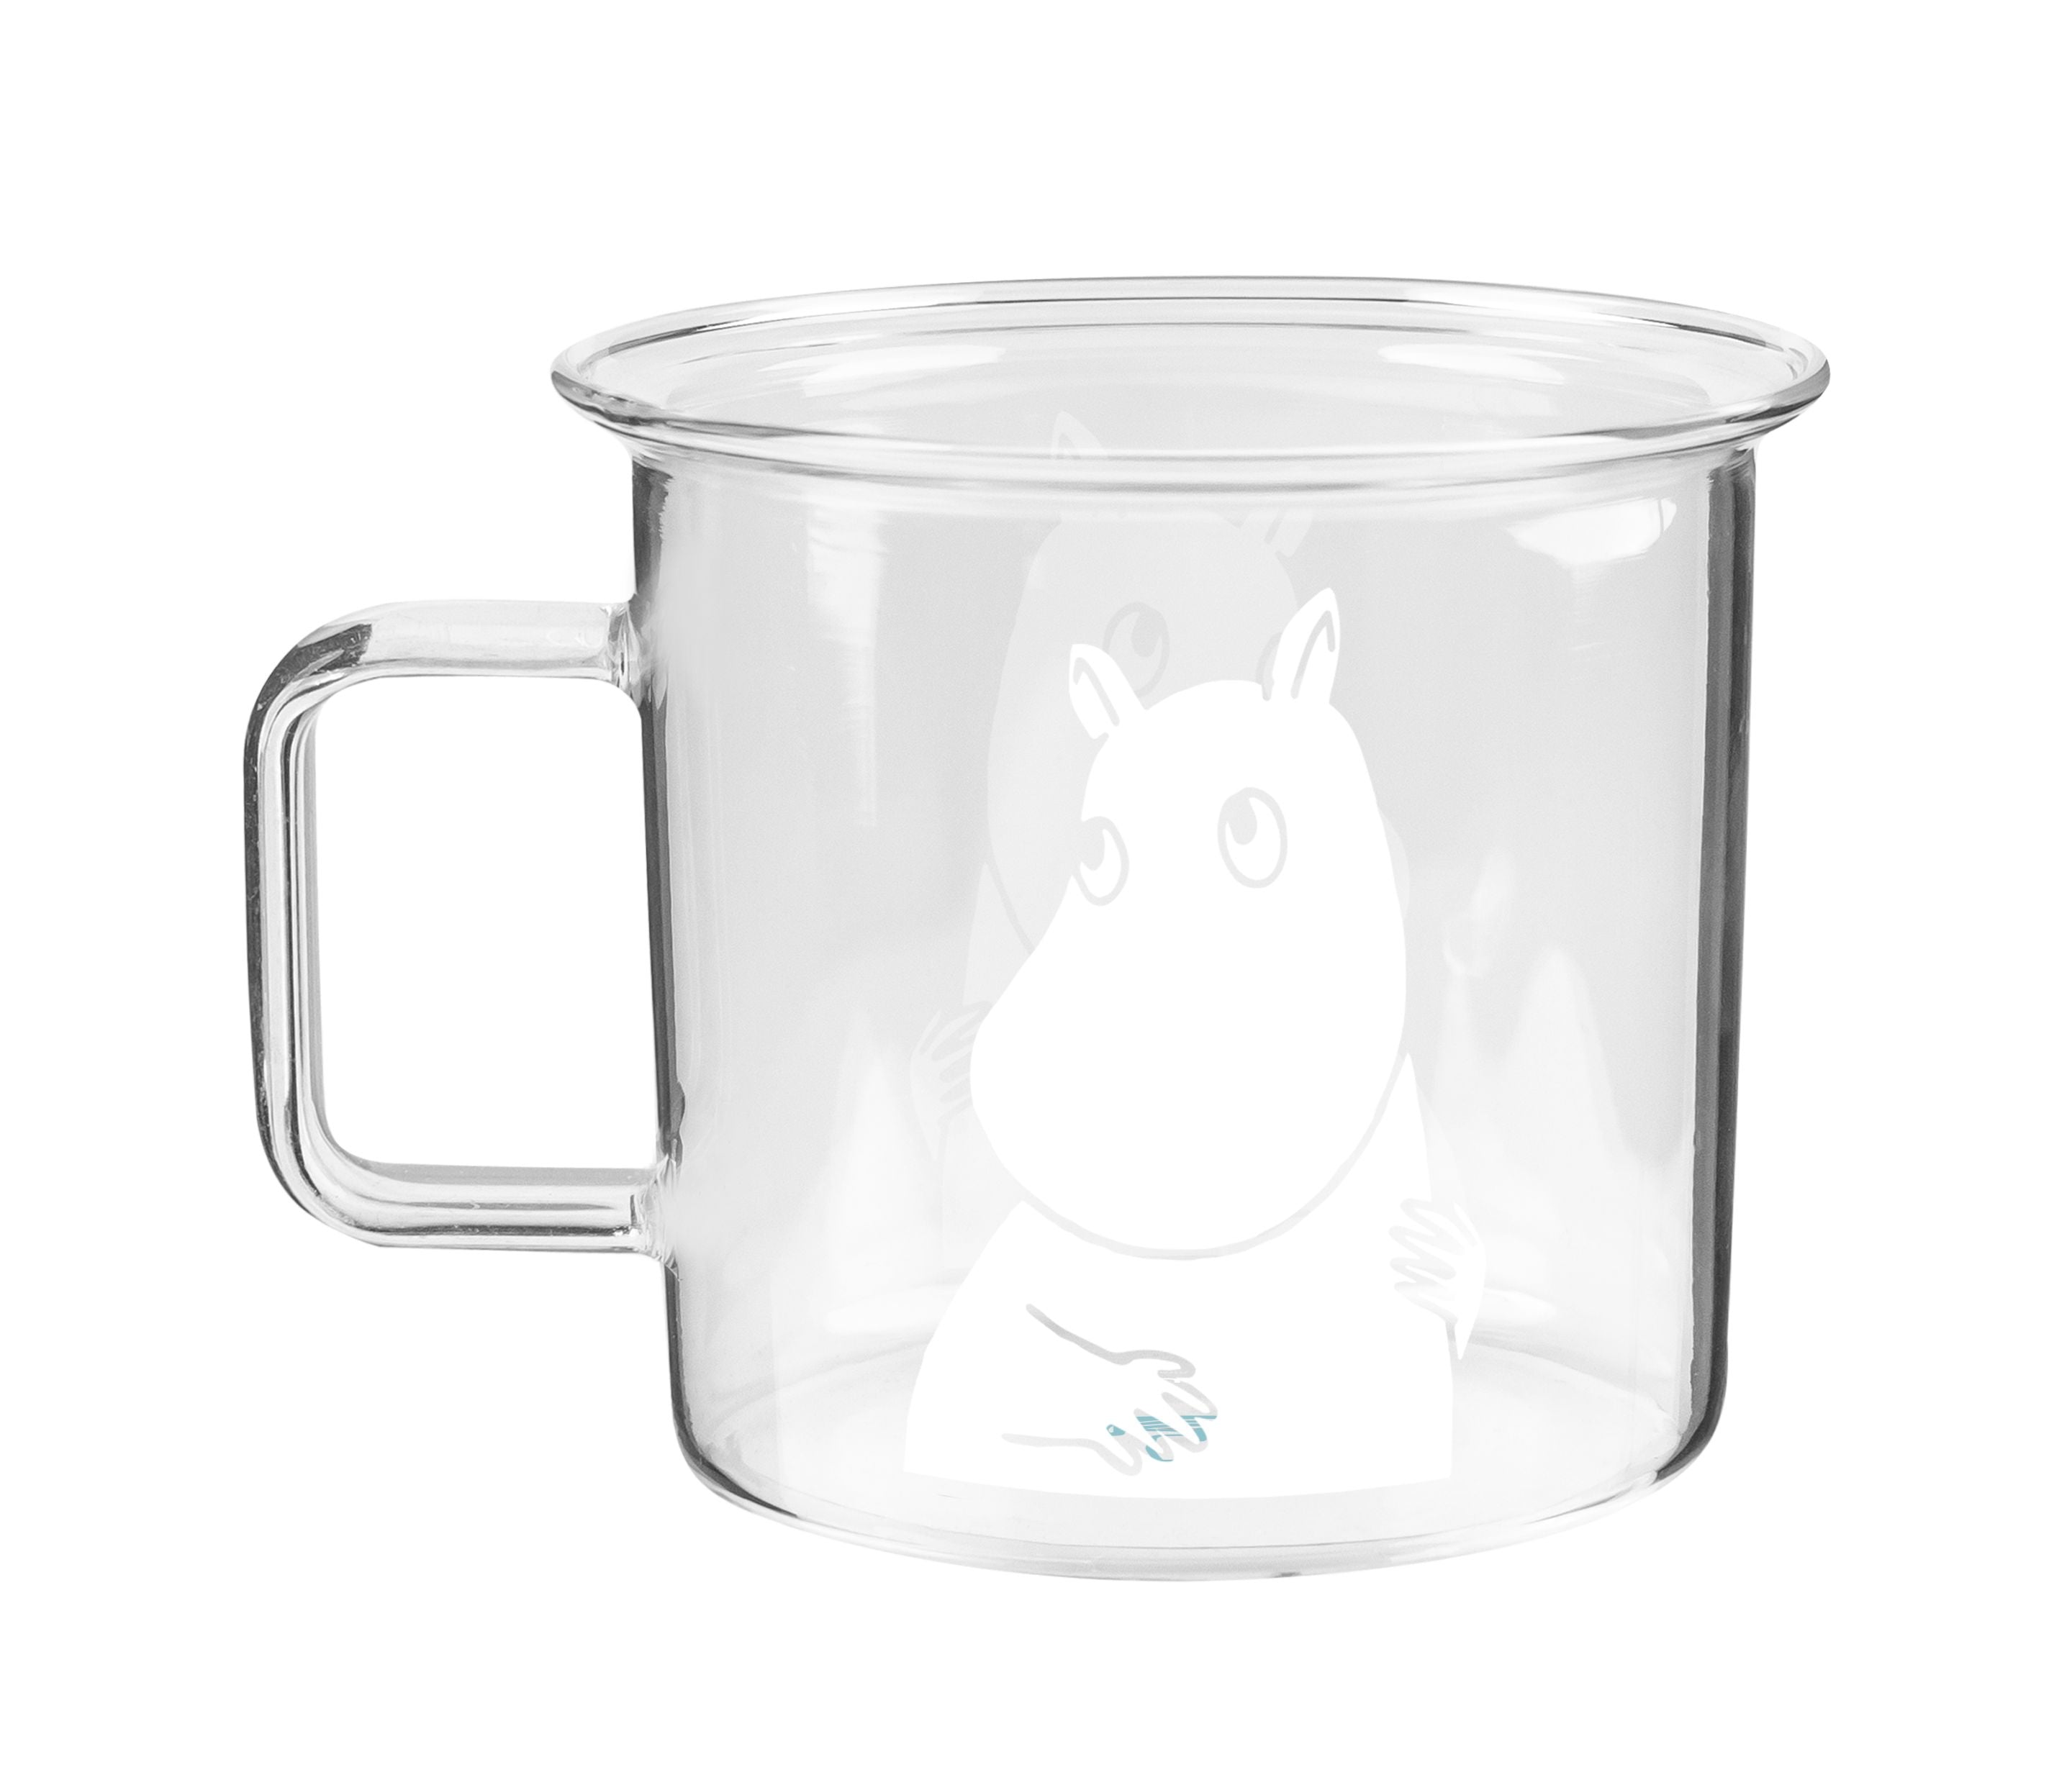 Muurla Moomin en verre tasse de verre 3,5 dl, MOMIN